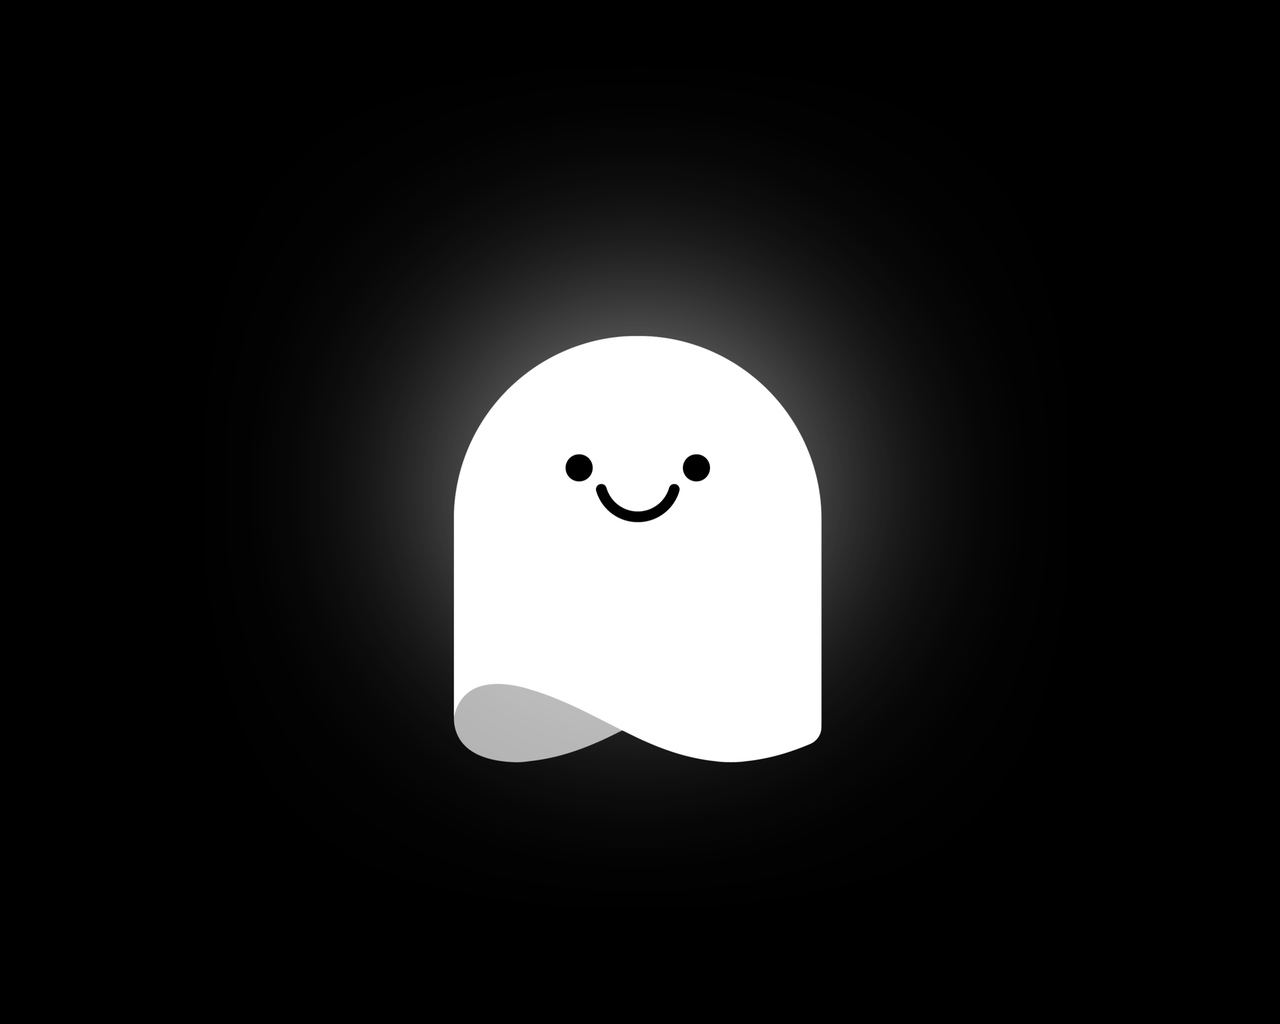 laughing-ghost-minimal-5k-vo.jpg